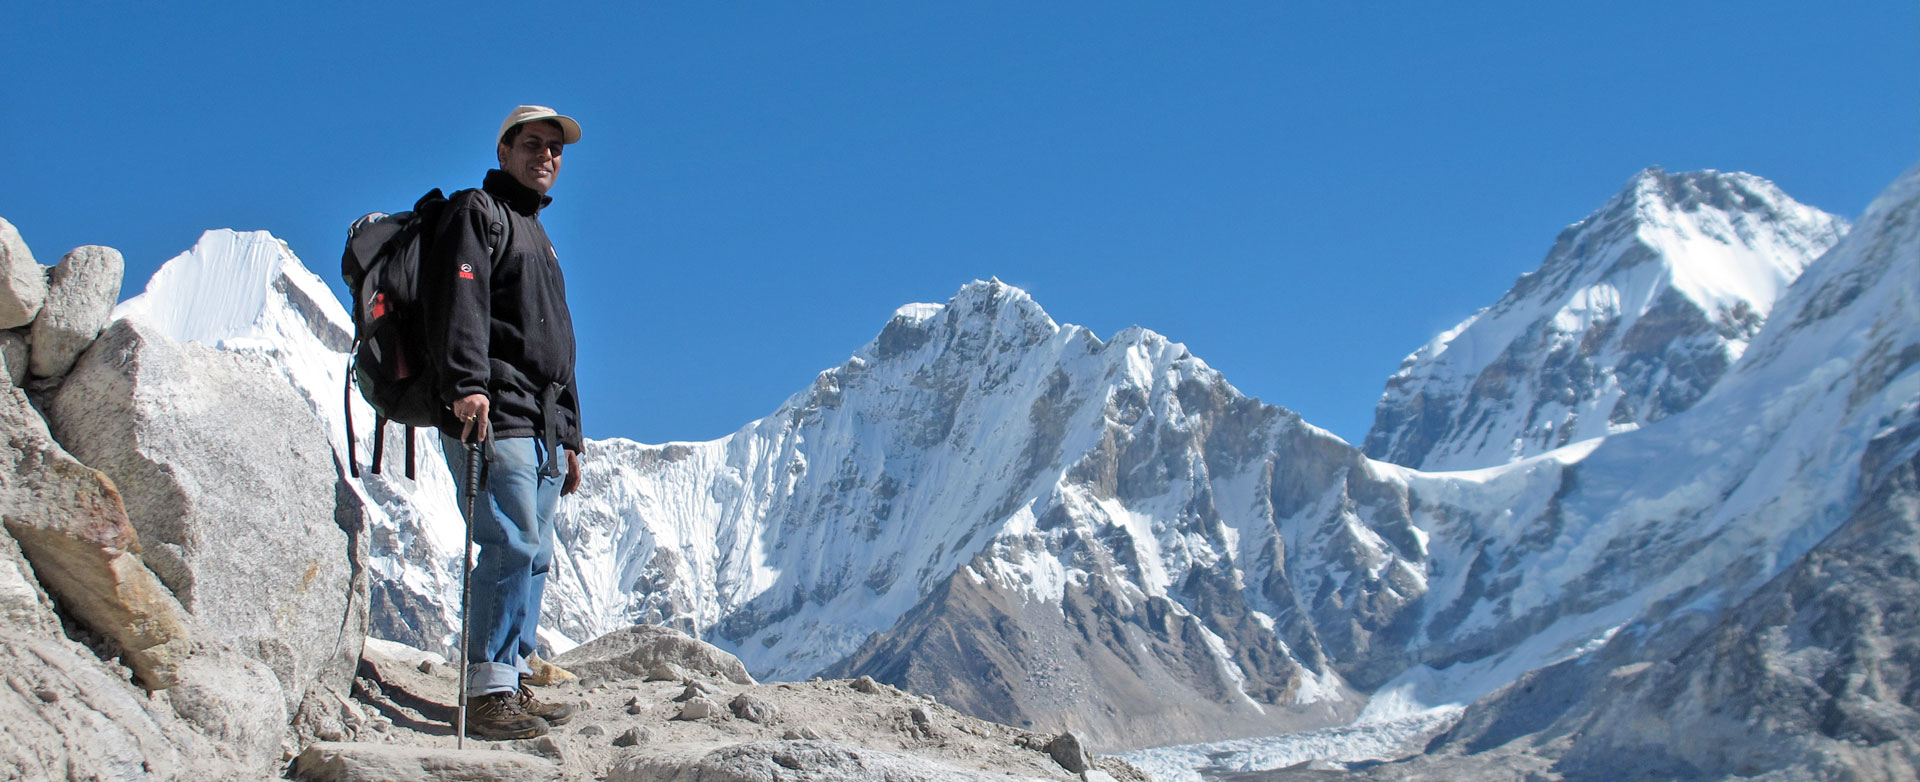 Everest Base Camp Guide - Giri